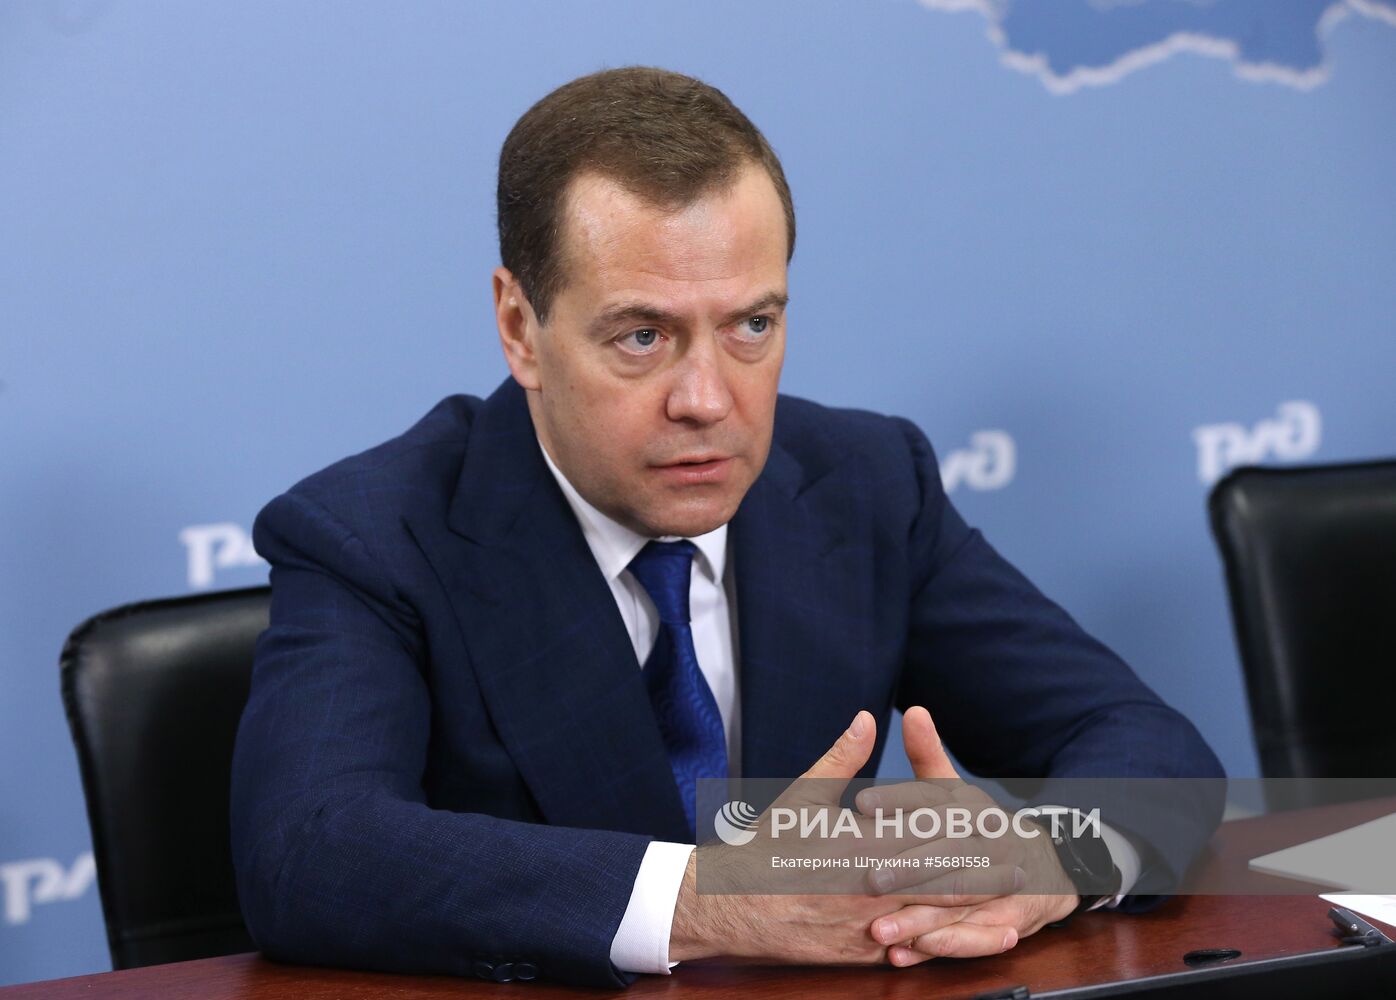  Премьер-министр РФ Д. Медведев провел совещание о долгосрочной программе развития ОАО «РЖД» до 2025 года